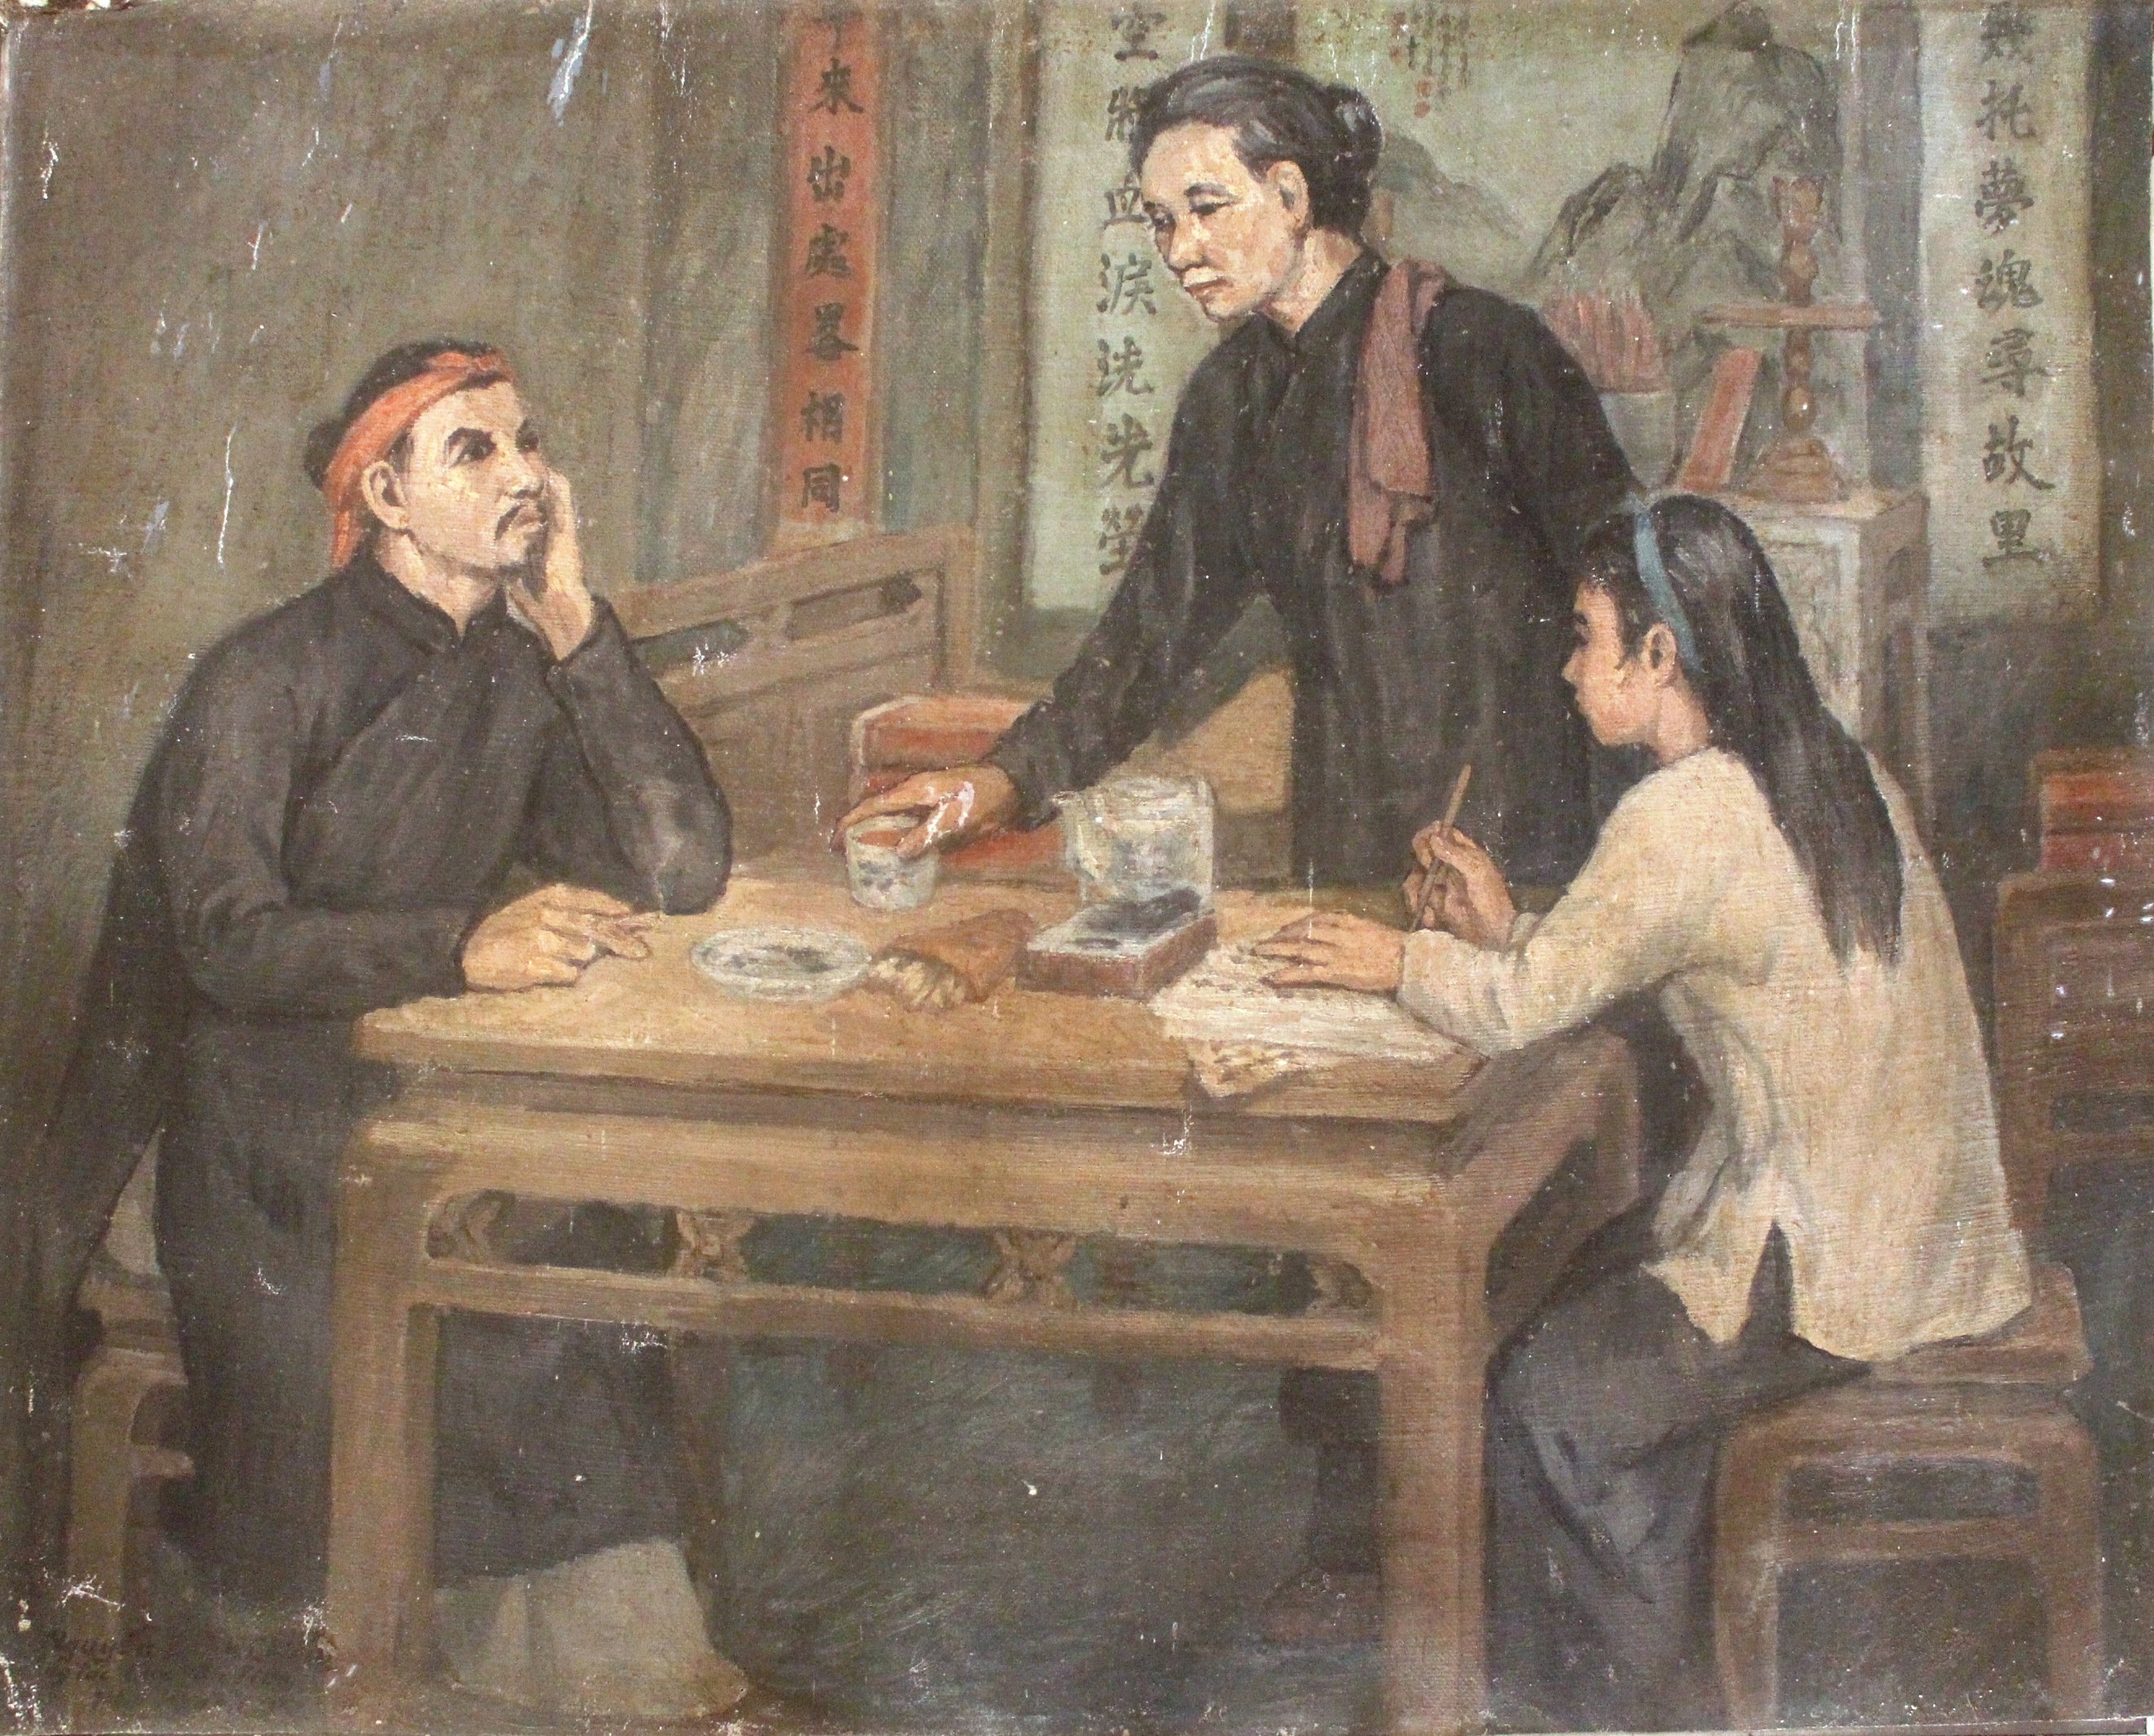 Tranh vẽ "Nguyễn Đình Chiểu sáng tác thơ, Sương Nguyệt Anh ghi chép”, họa sĩ Nguyễn Phi Hoanh vẽ năm 1973. Tranh: (125 cm x 85) cm